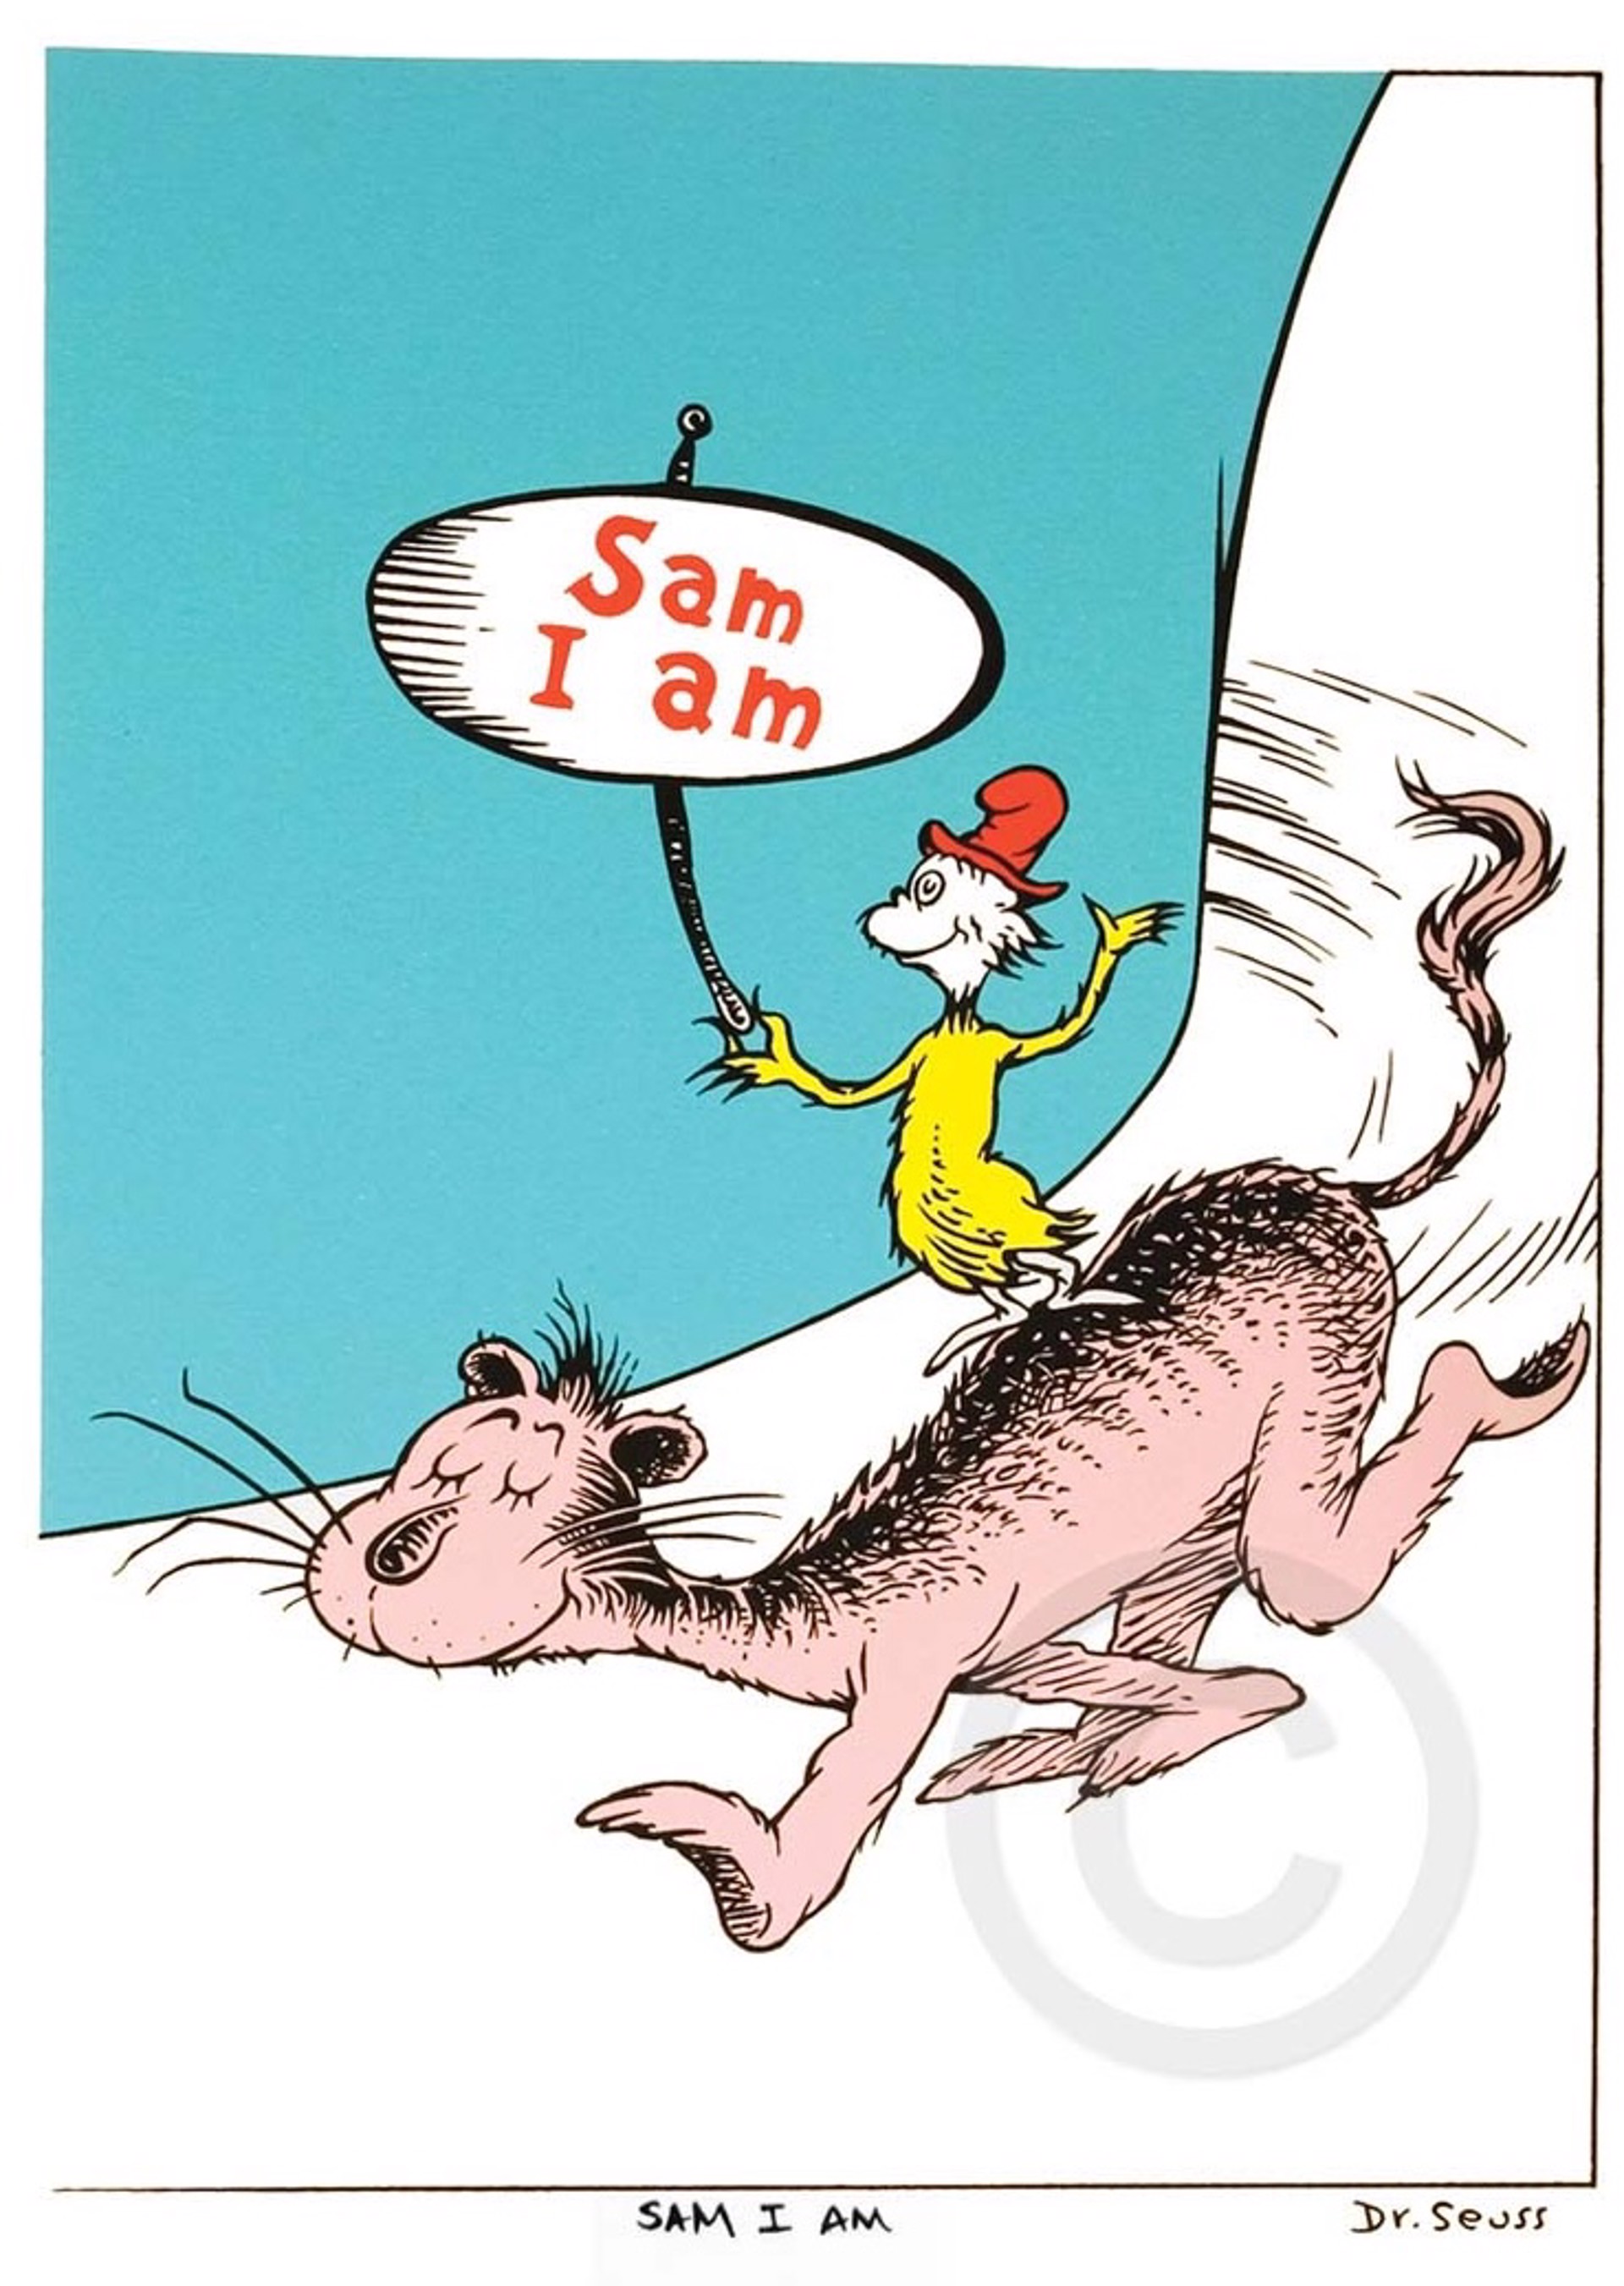 Sam I Am by Dr. Seuss